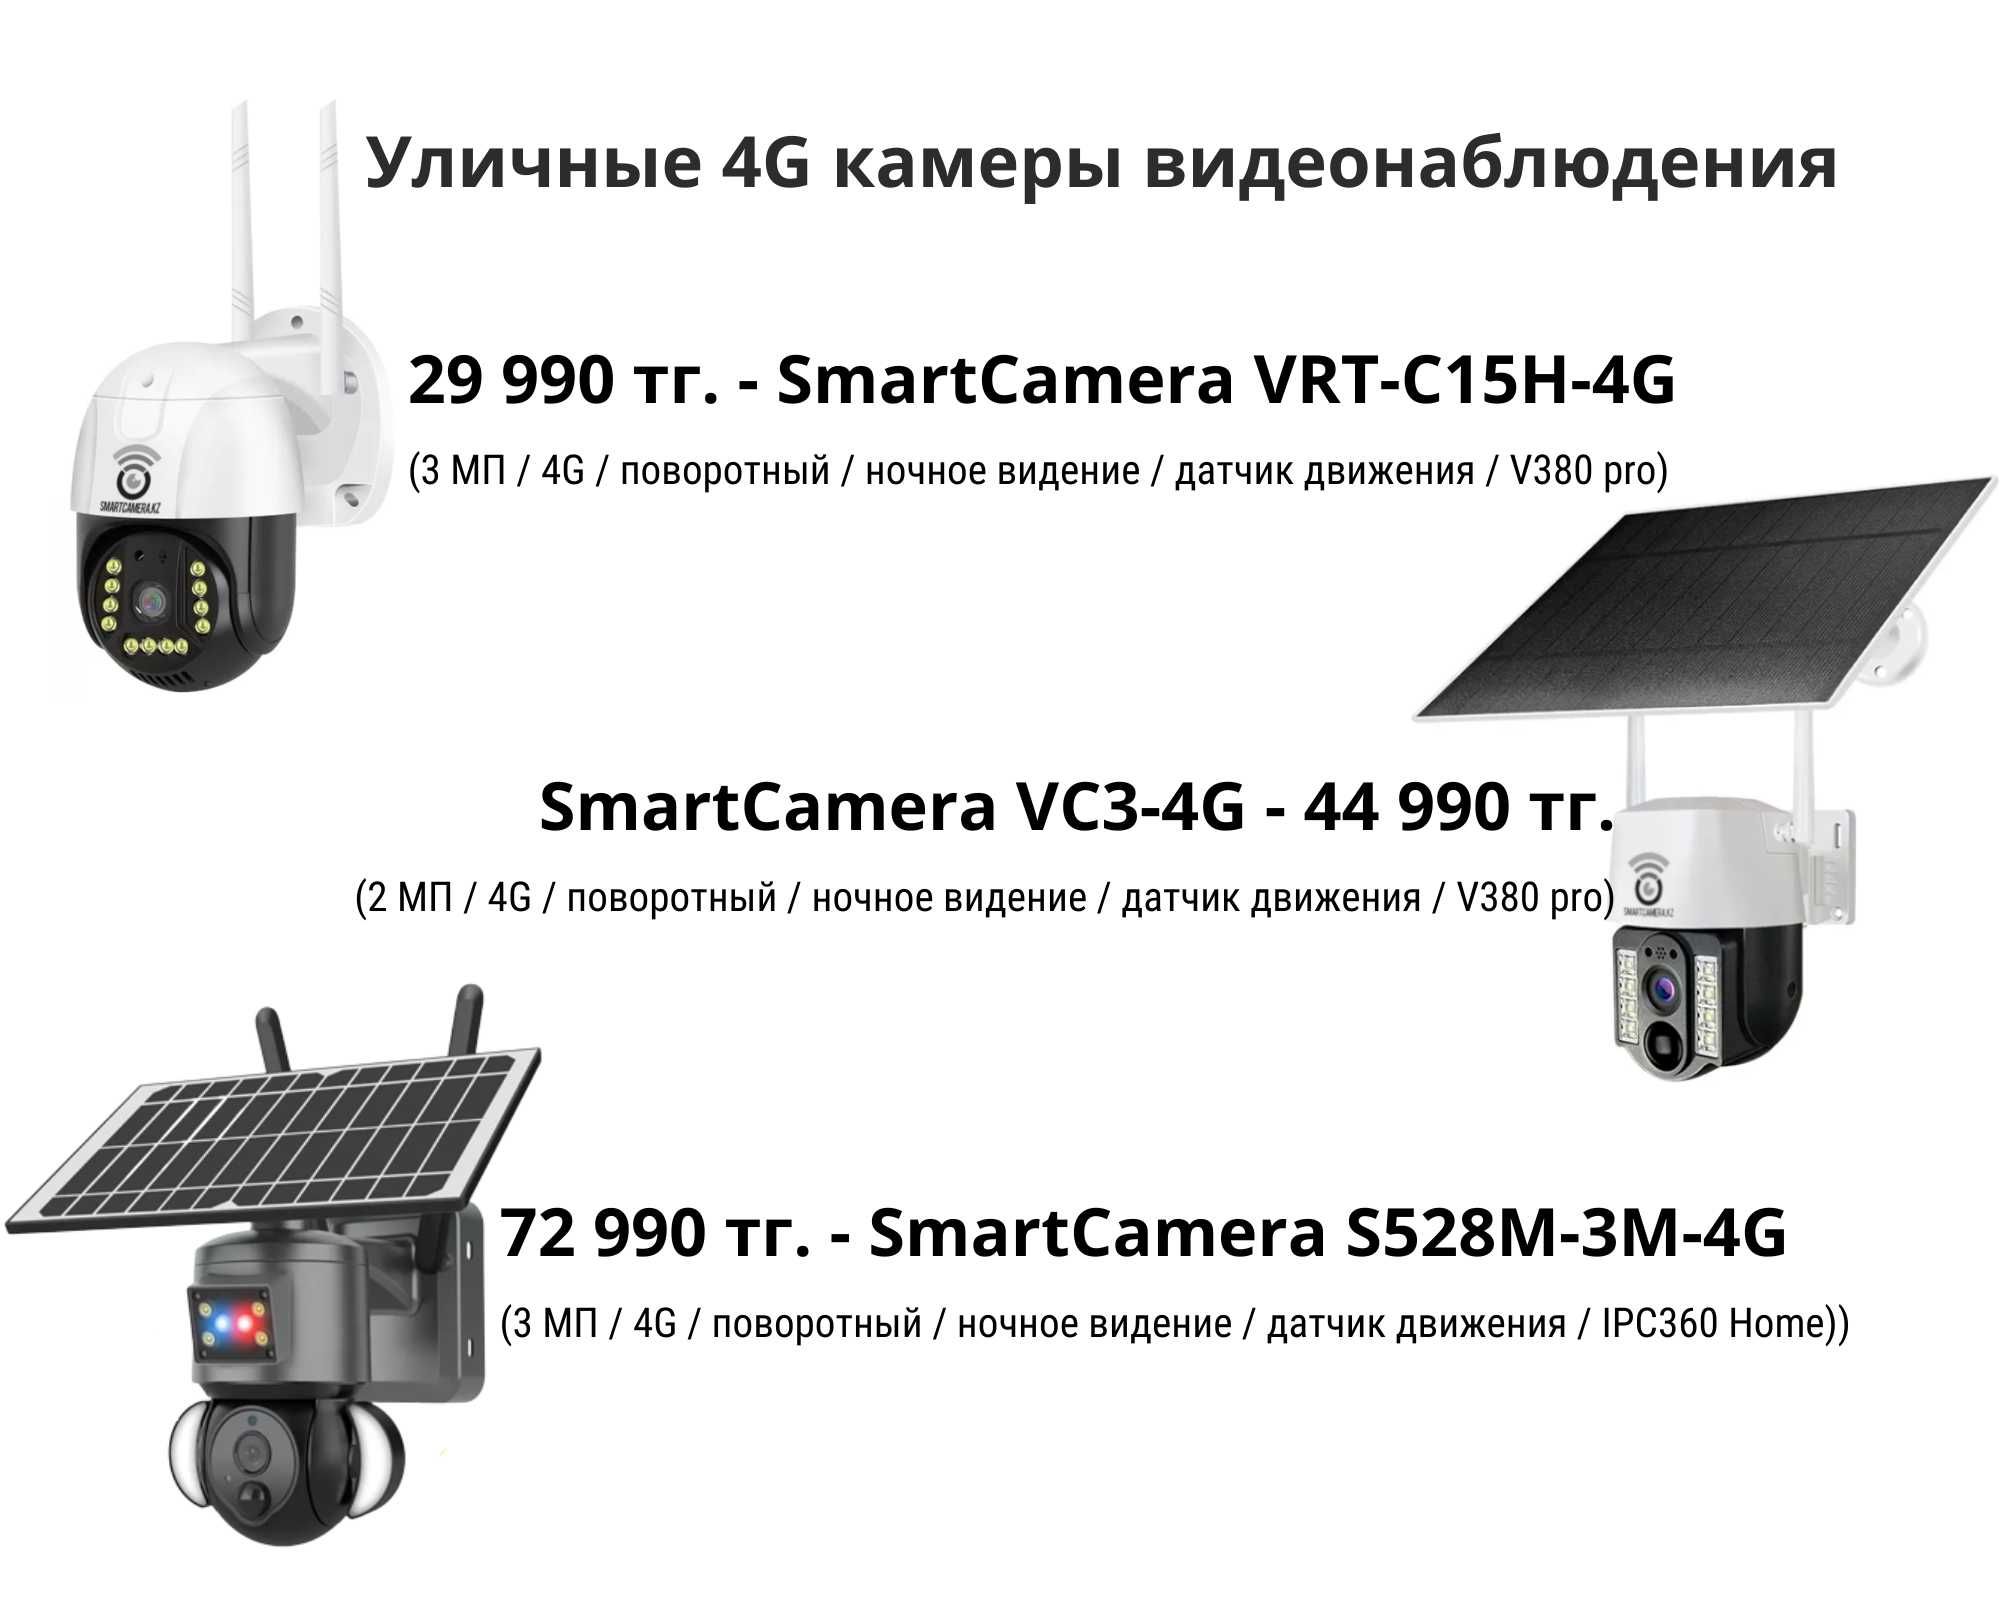 Беспроводные камеры видеонаблюдения для безопасности дома и бизнеса